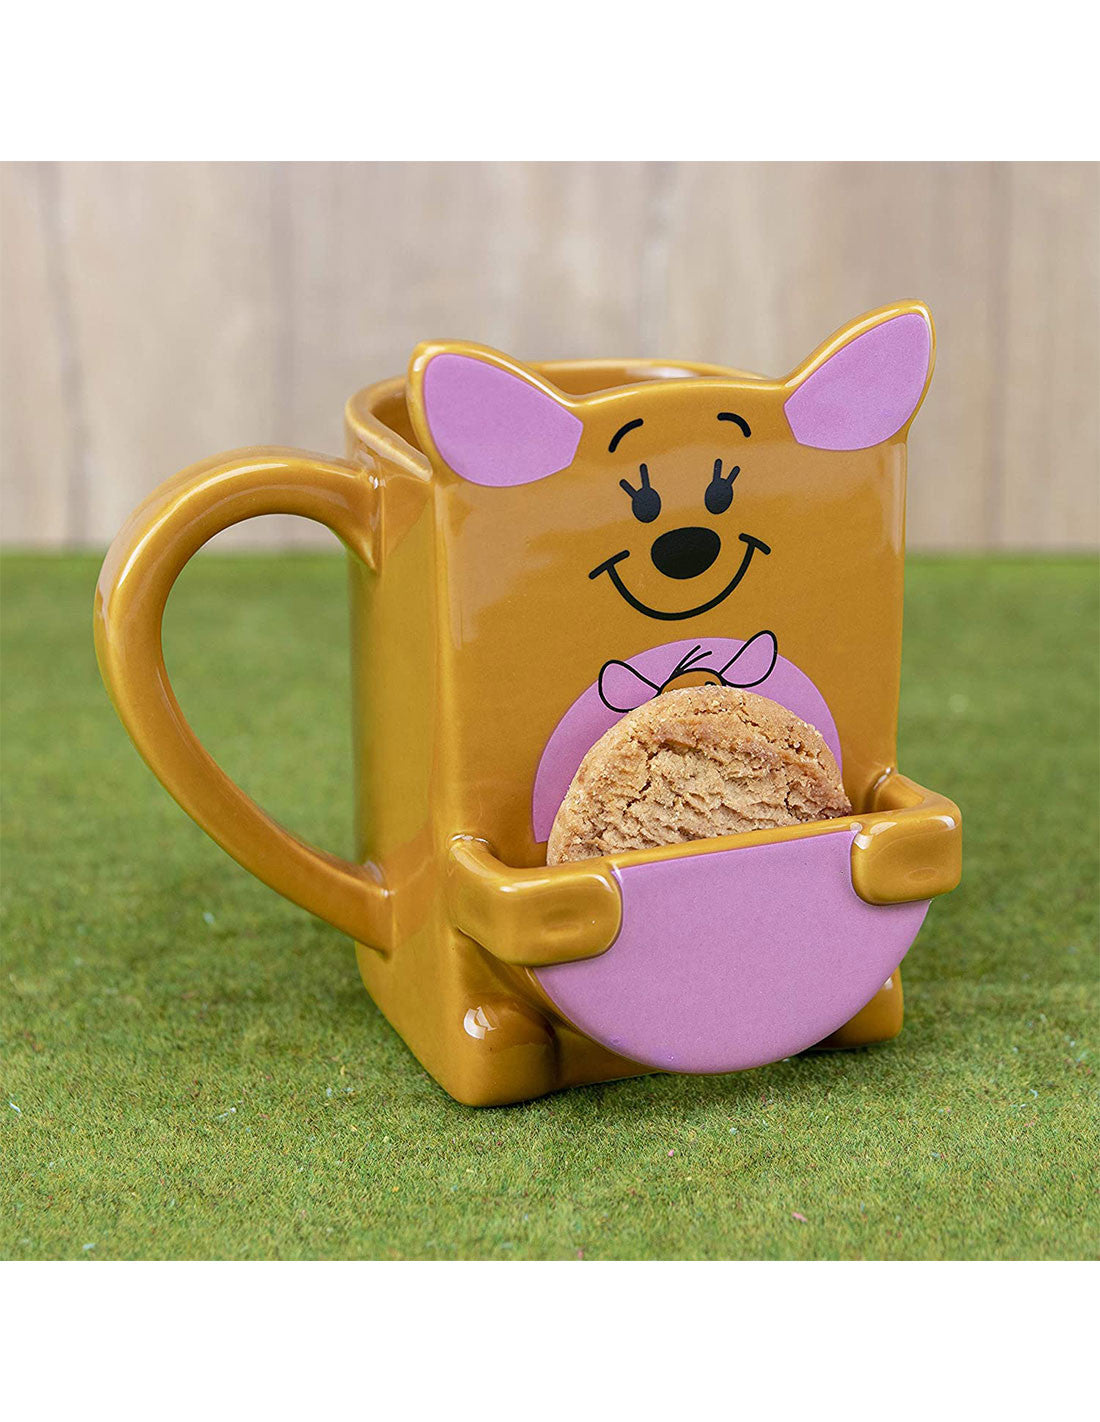 Mug with pocket Winnie the Pooh Disney - Big Guru